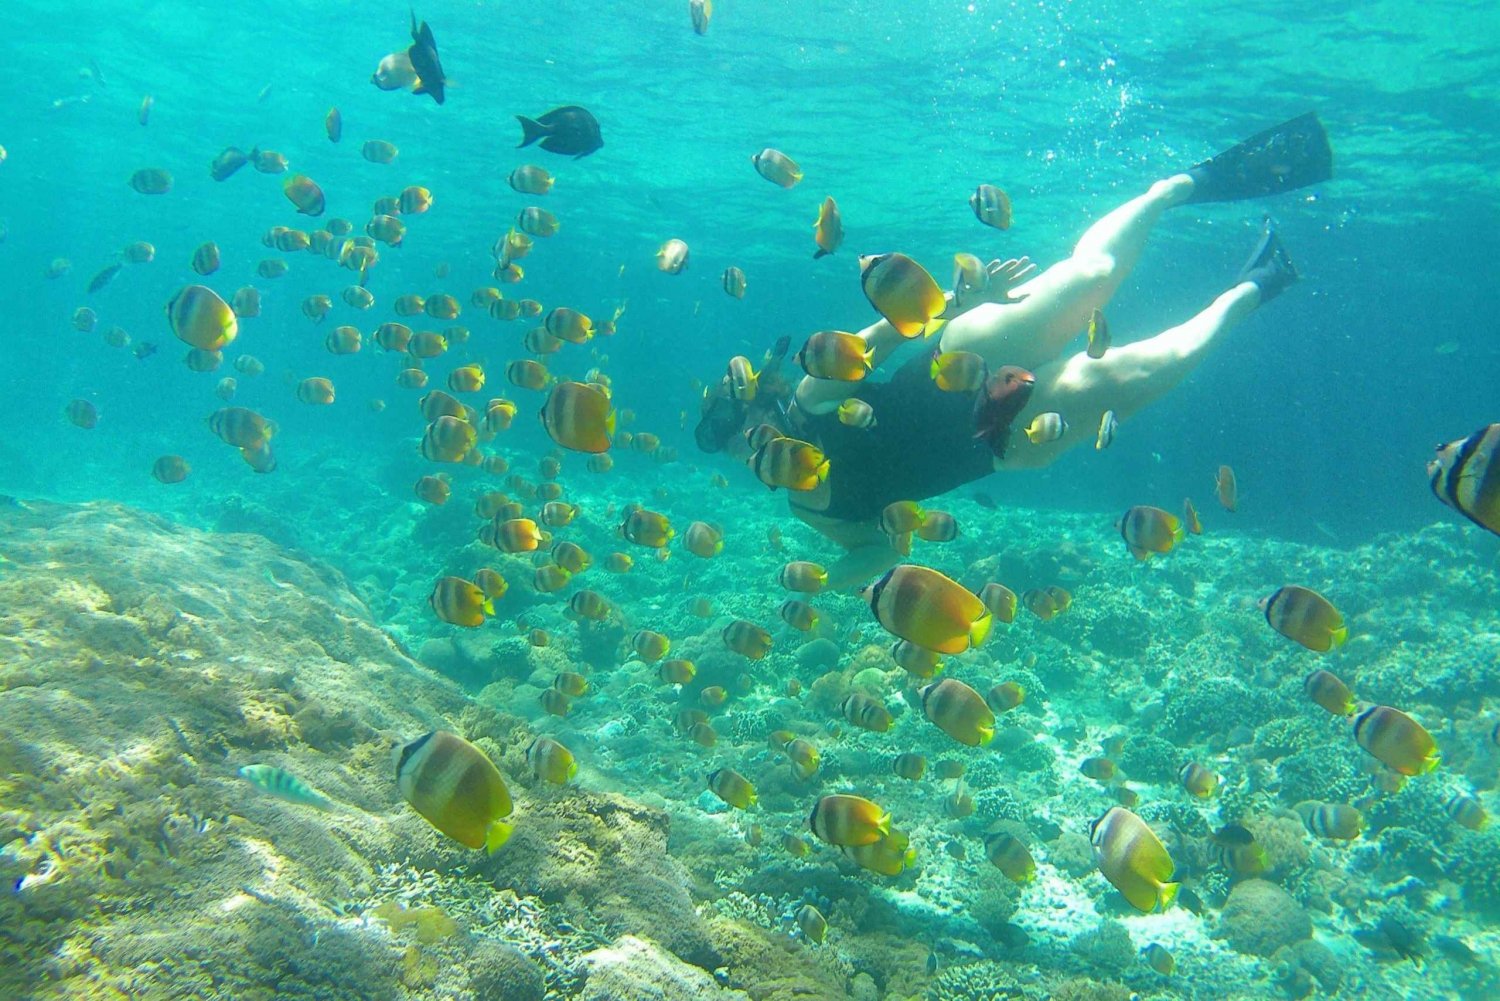 Excursão de mergulho com snorkel em Manta: Explore 4 pontos favoritos de mergulho com snorkel